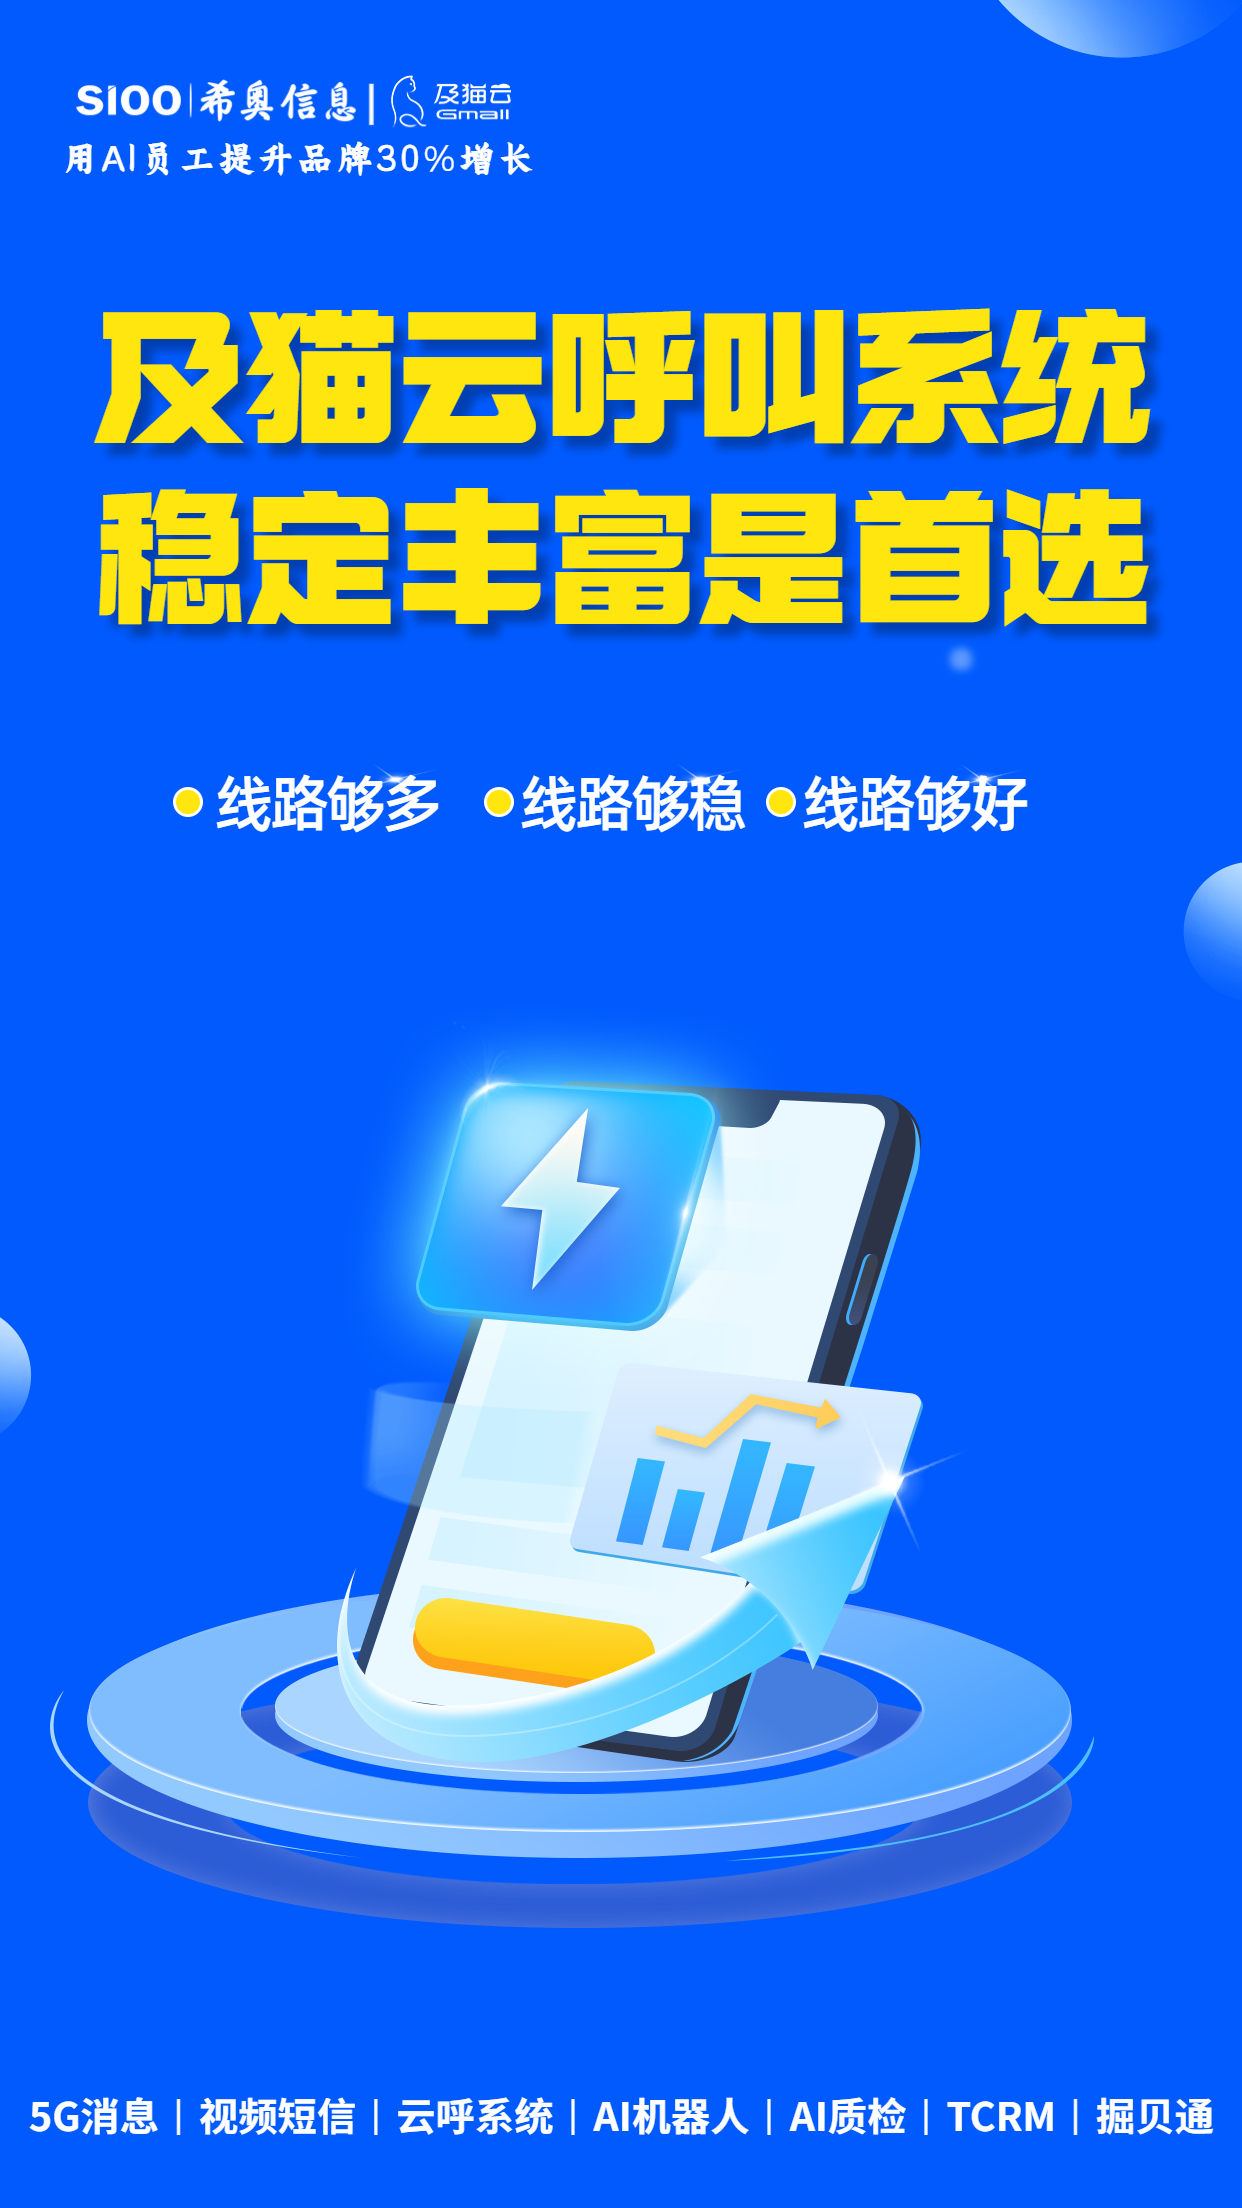 5G电信宽带套餐促销宣传海报 (1).jpg